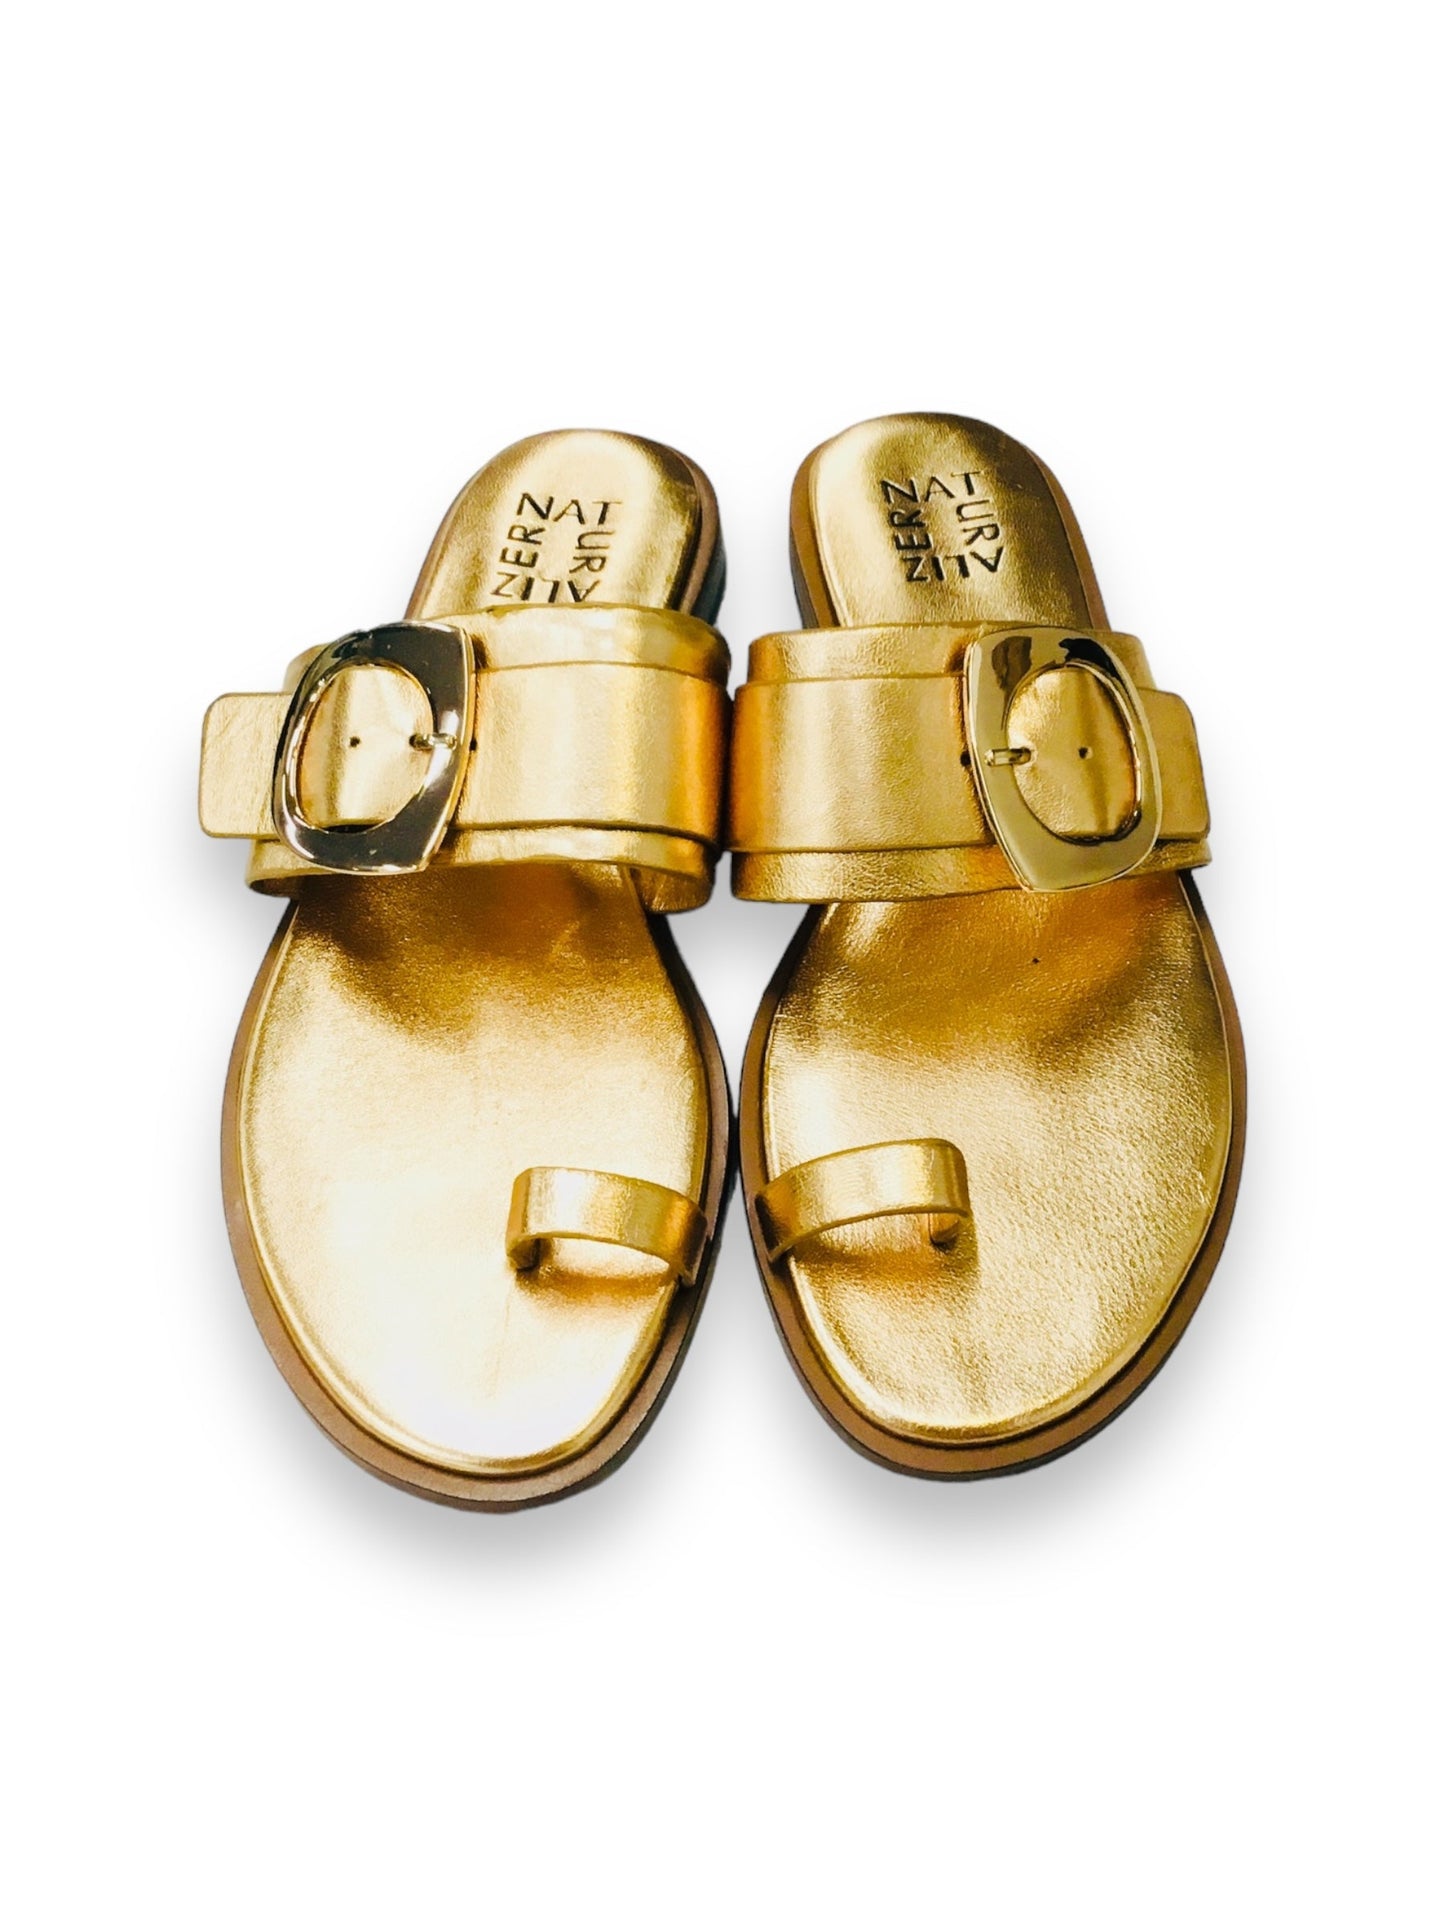 Gold Sandals Flip Flops Naturalizer, Size 7.5